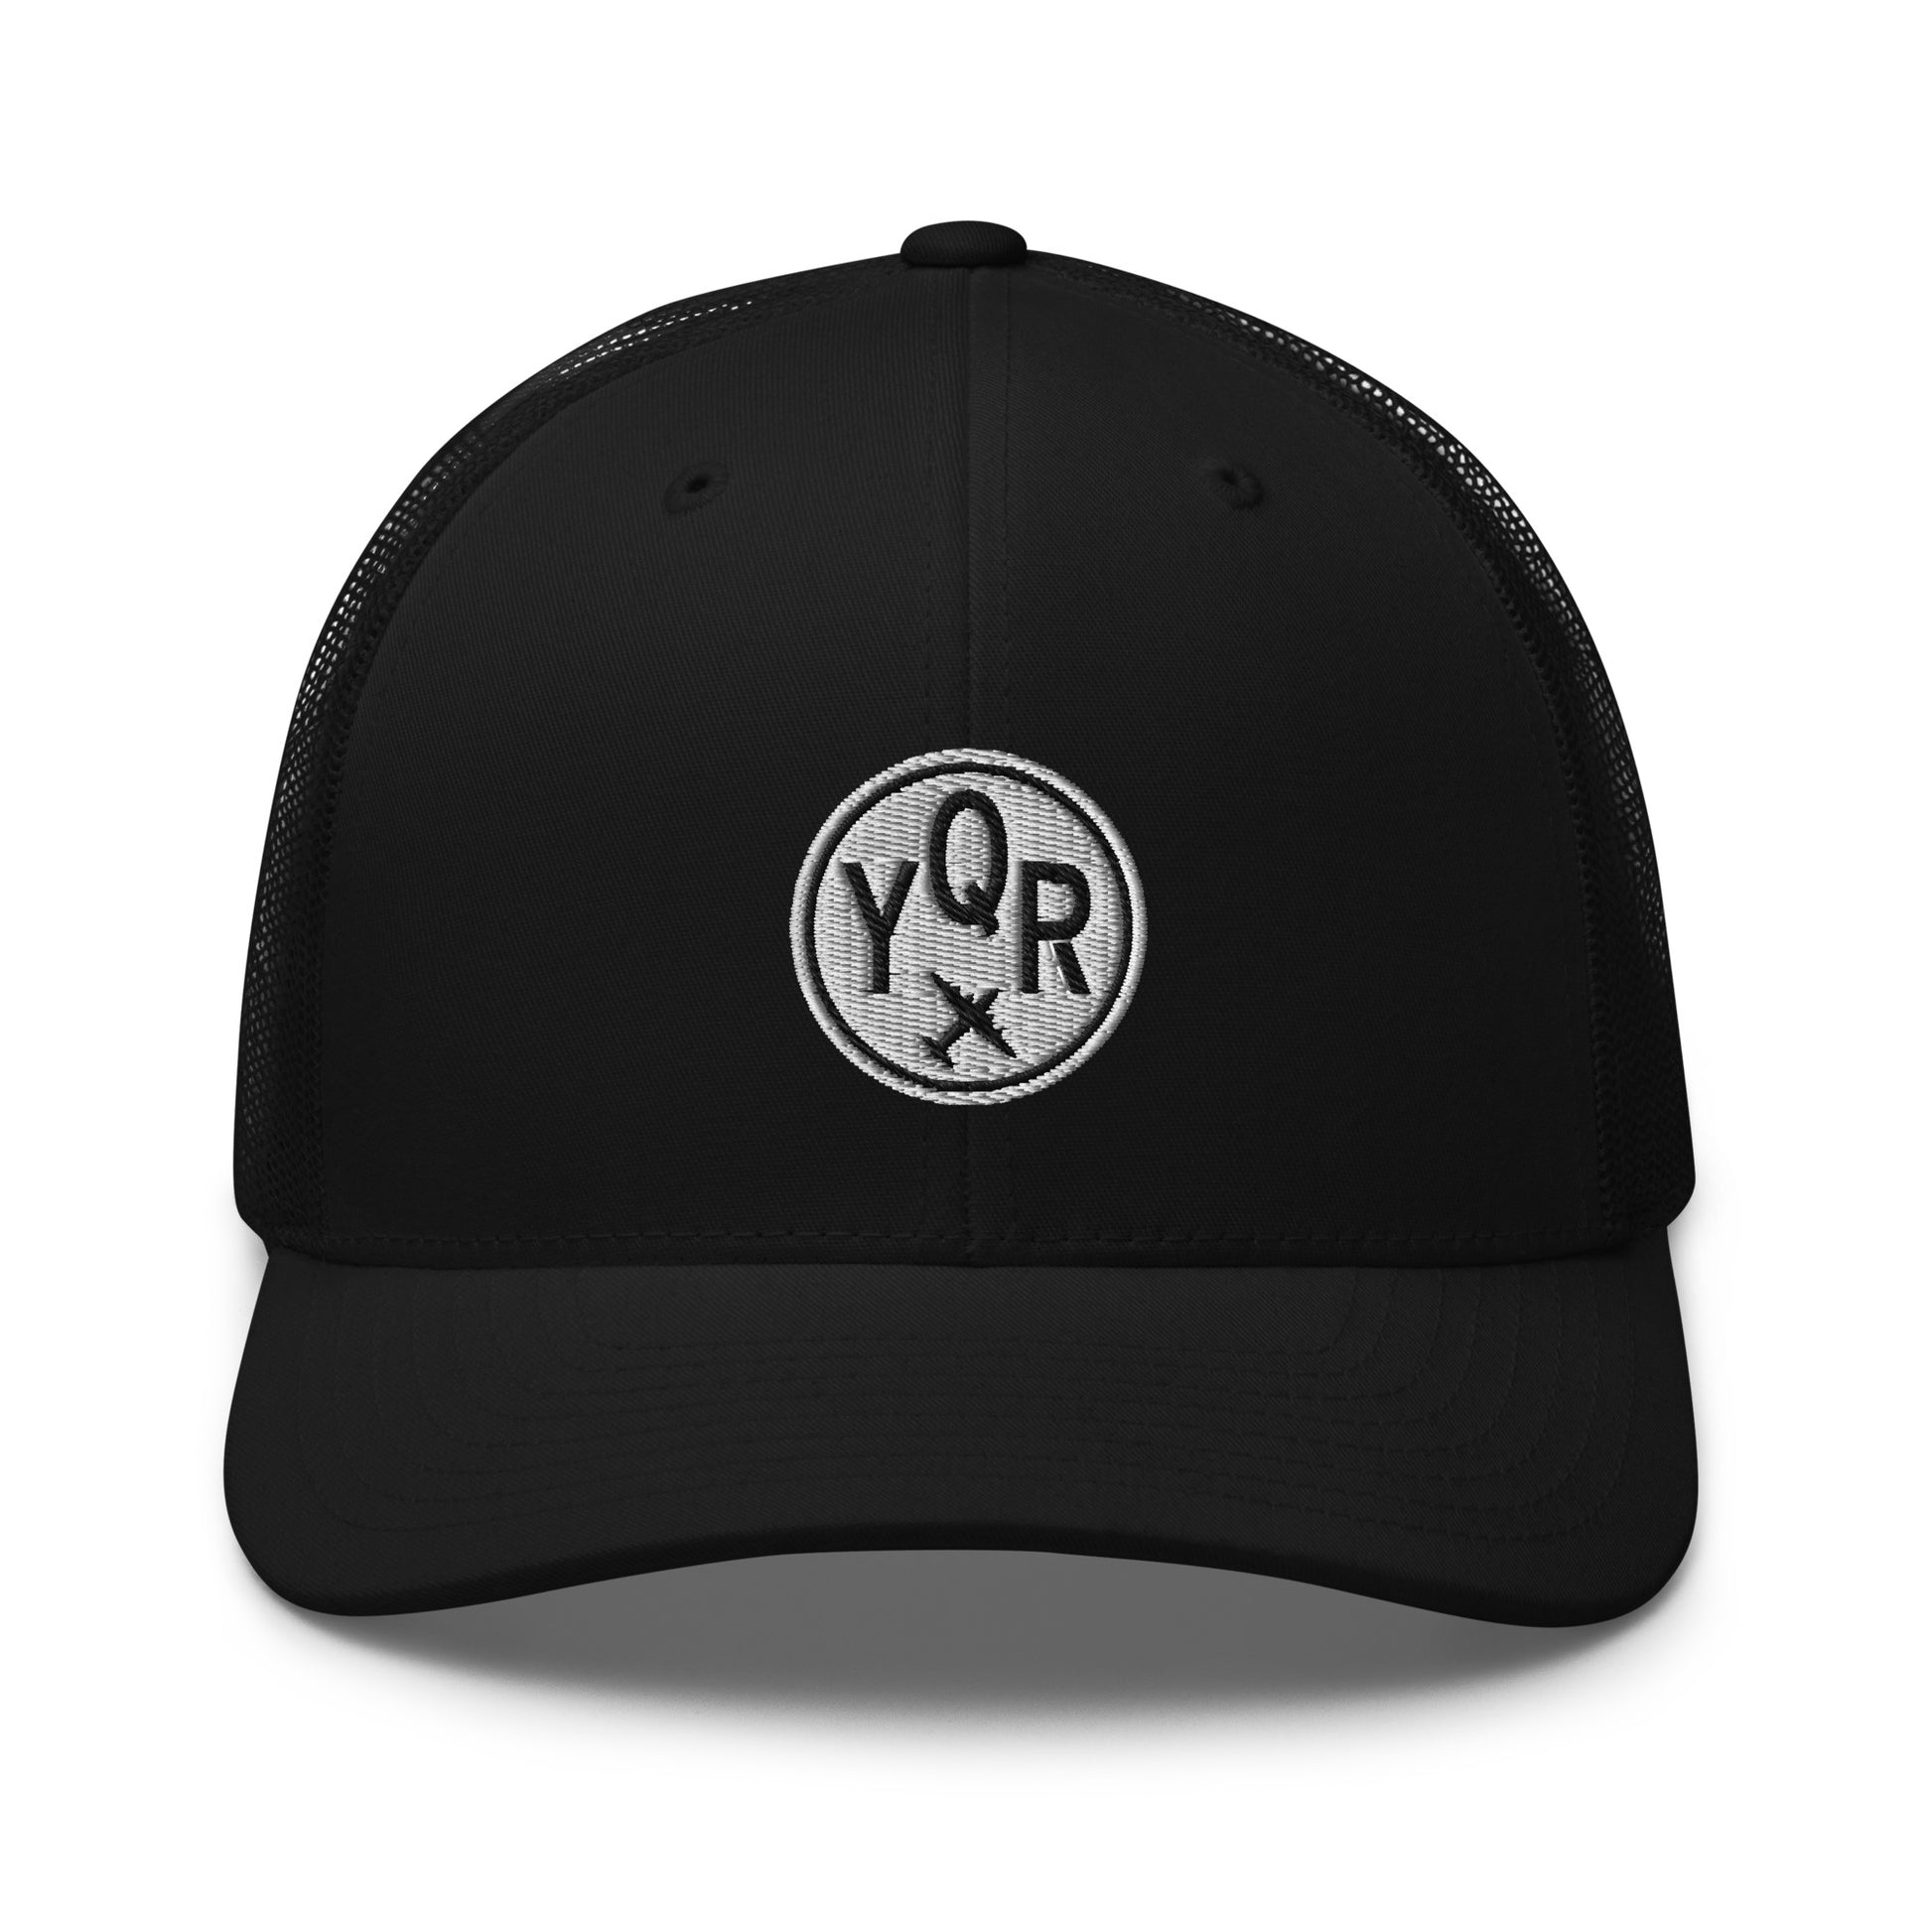 Roundel Trucker Hat - Black & White • YQR Regina • YHM Designs - Image 06